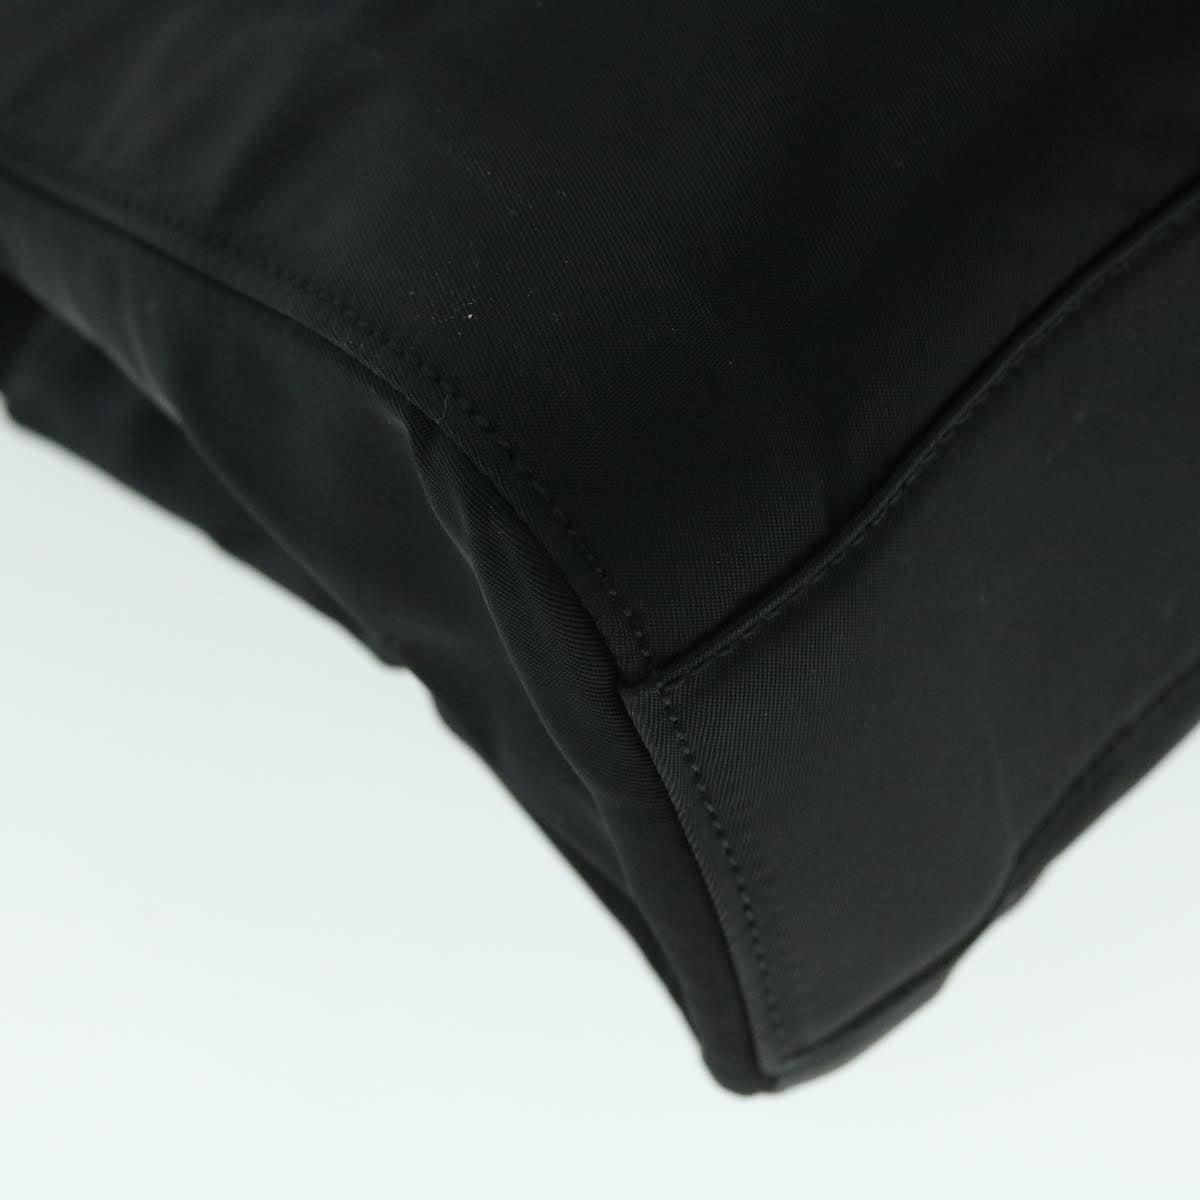 PRADA Chain Shoulder Bag Nylon Black Auth fm2739